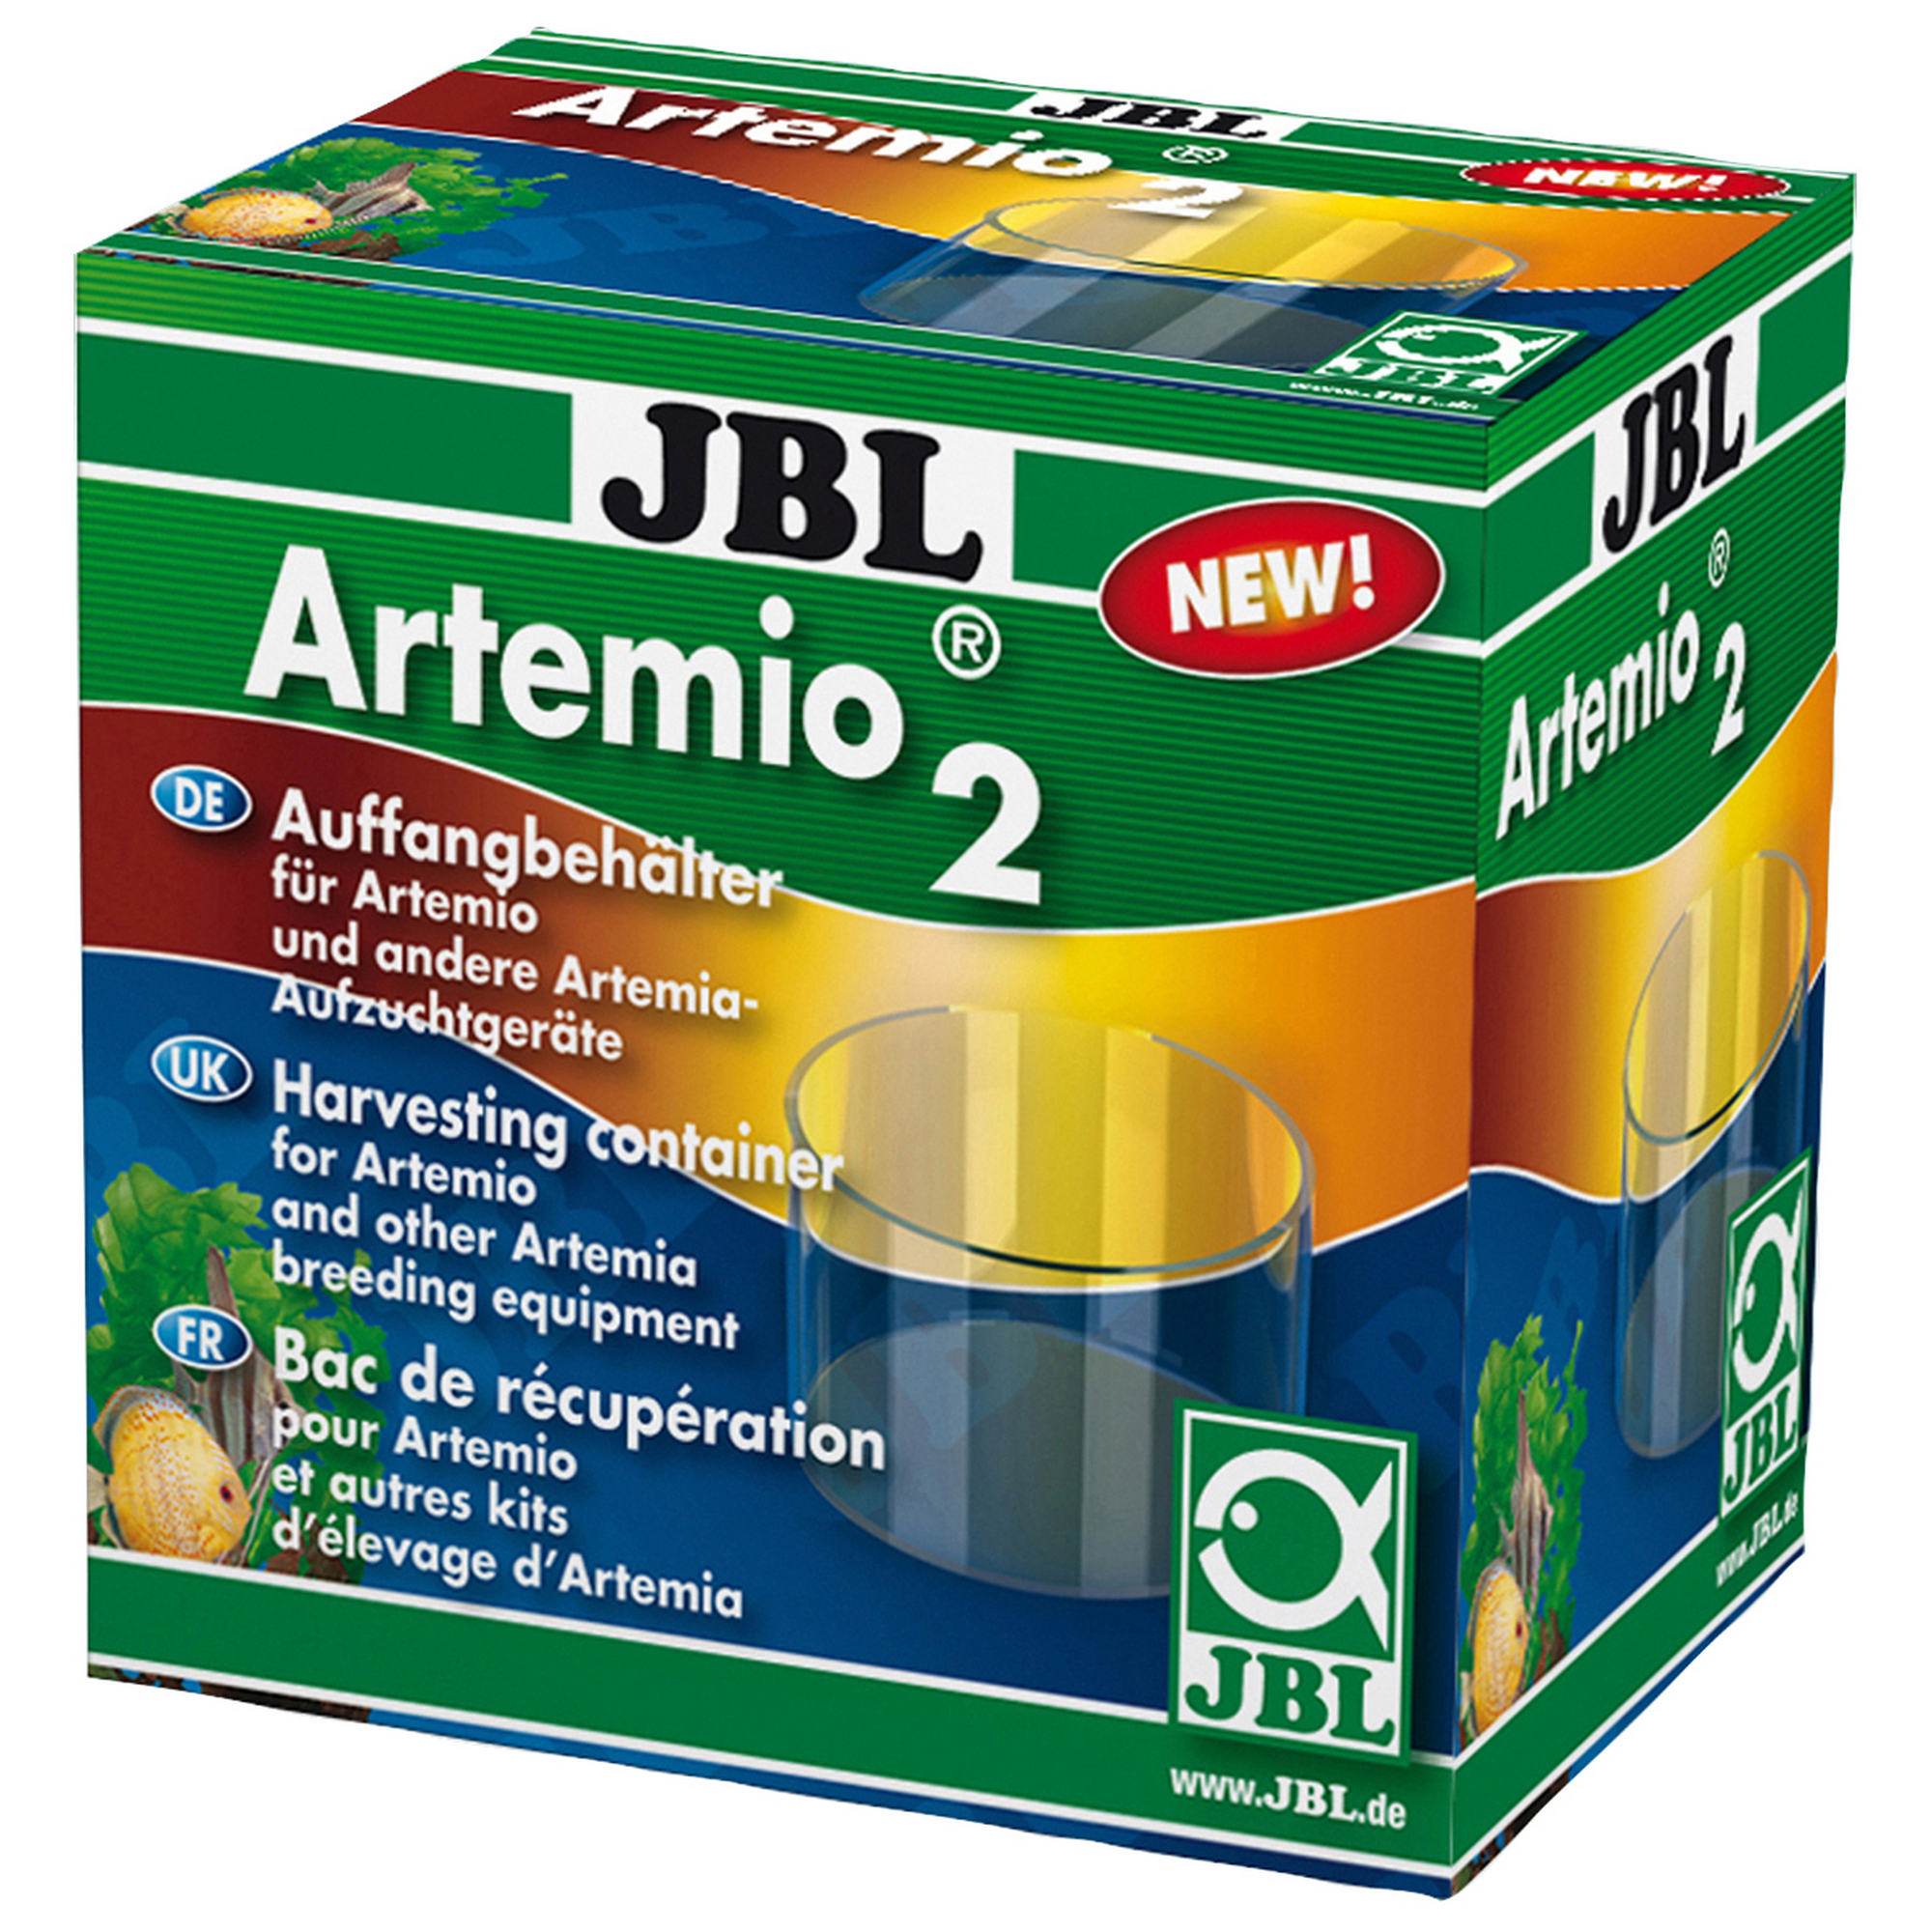 Auffangbehälter für Artemio + product picture